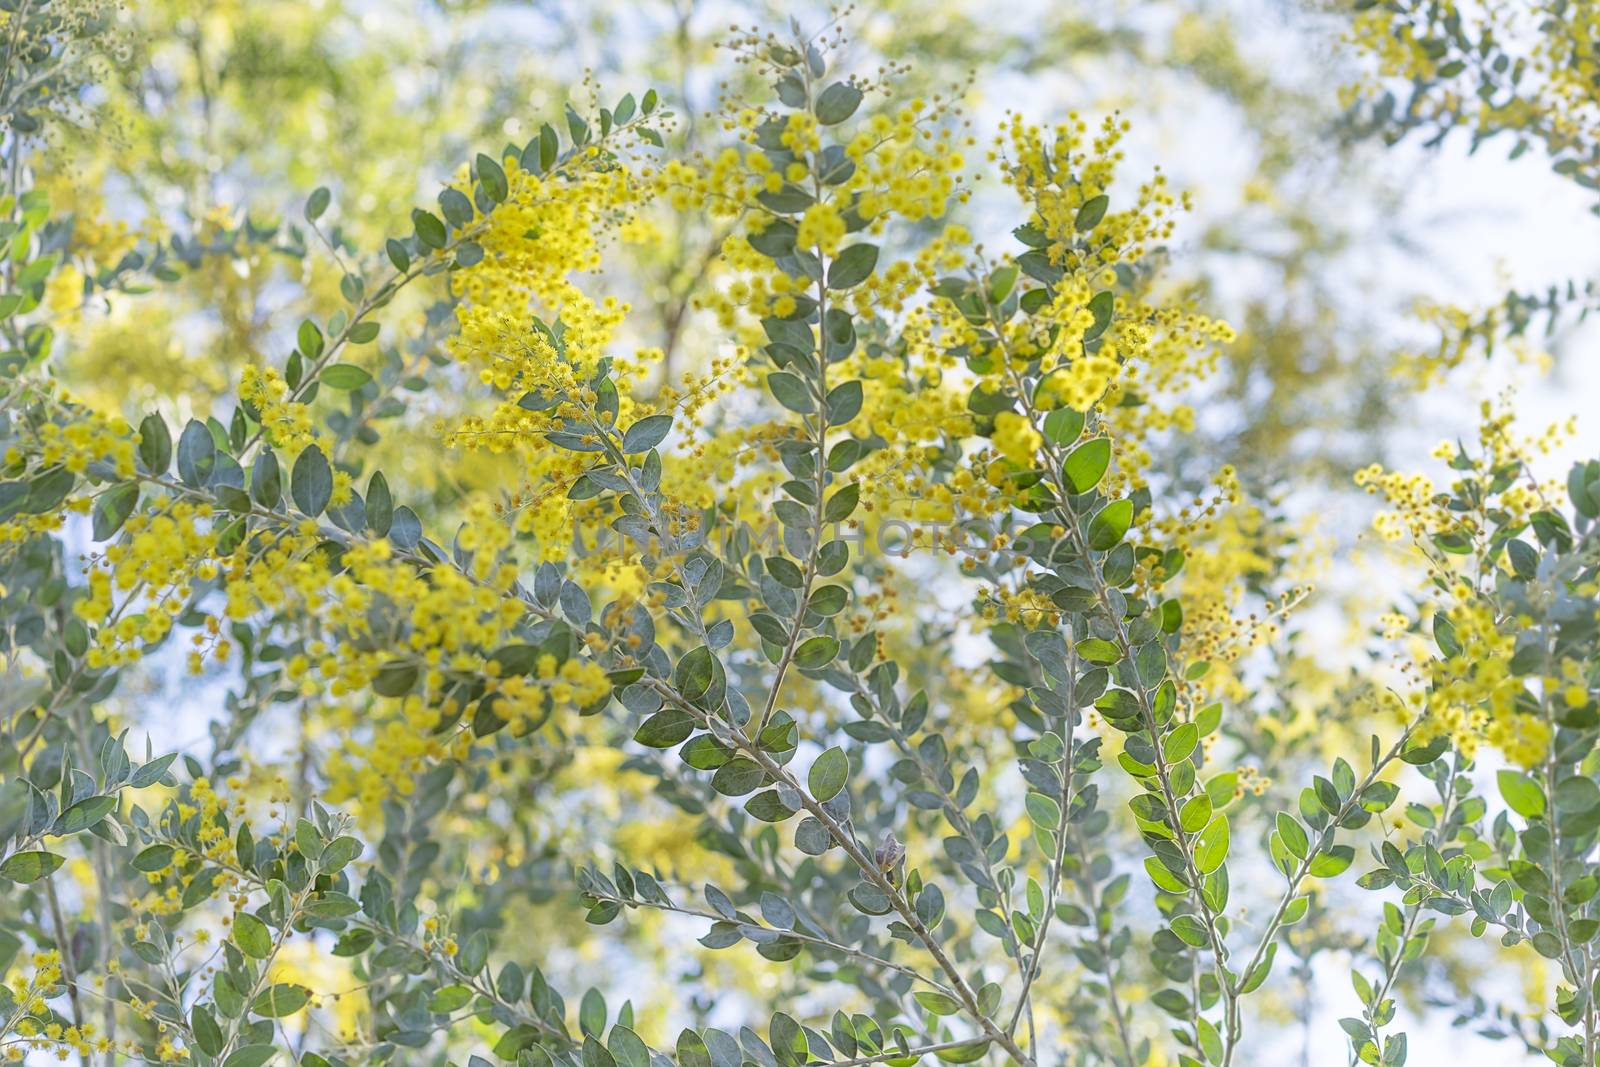 Queensland silver wattle tree flowers by sherj